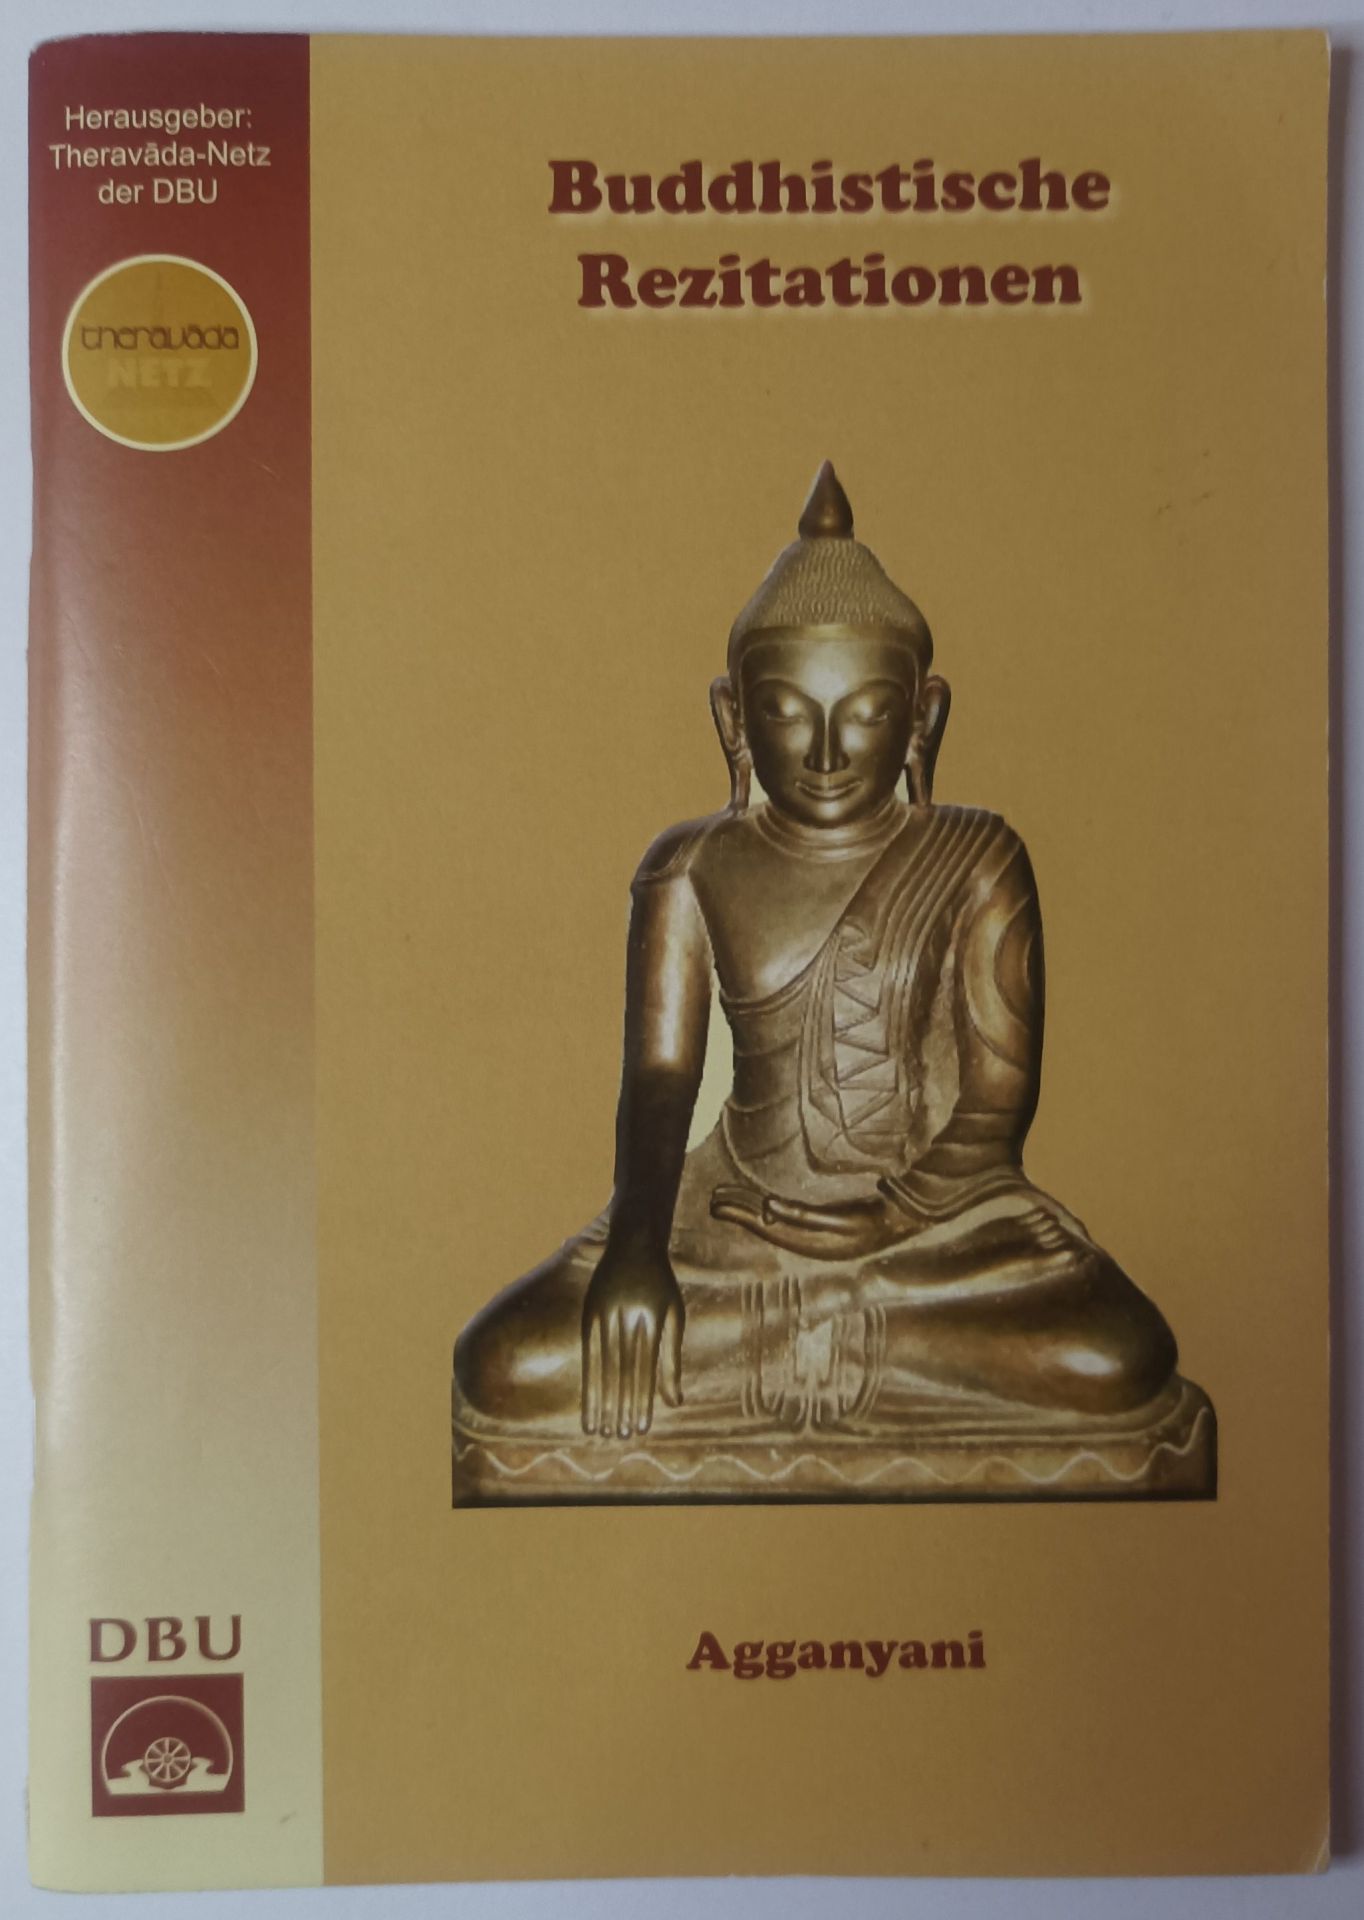 Buddhistische Rezitationen - Wichtige Reziationstexte und Verse aus dem Theravada zum Chanten, Kontemplieren, Inspirieren, Verinnerlichen. - Agganyani